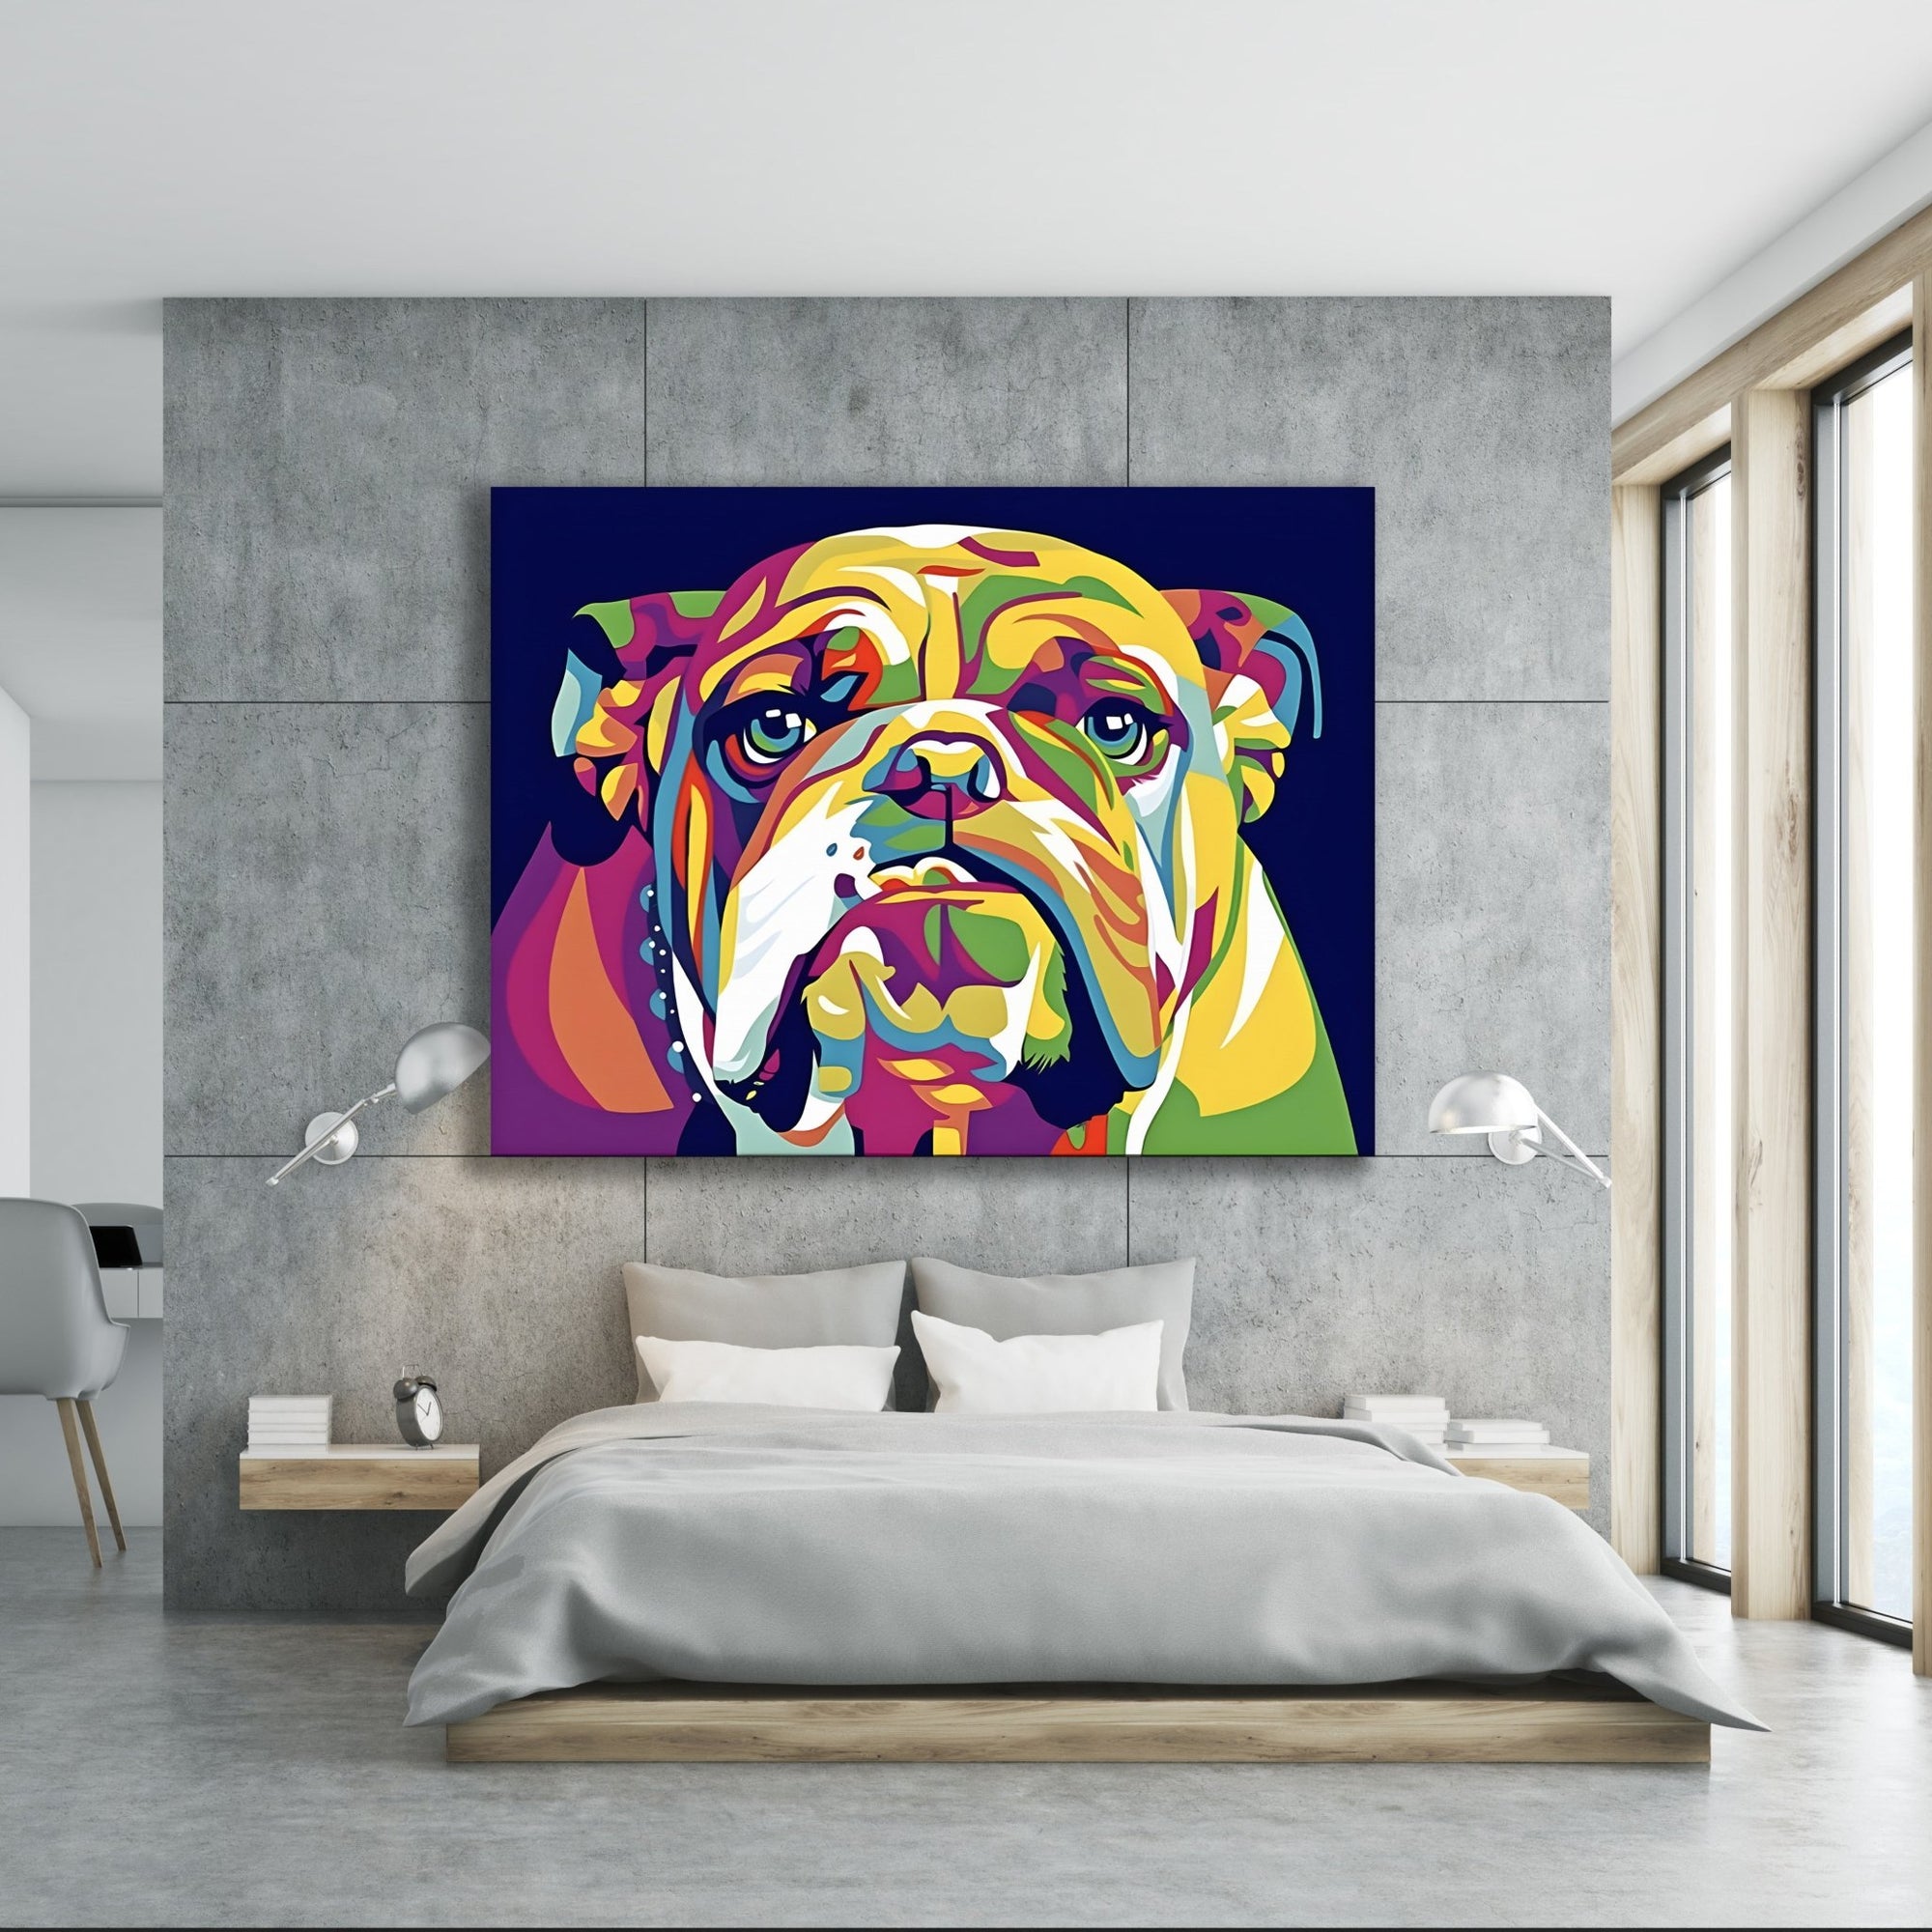 Bulldog Pop Art Canvas - The Trendy Art